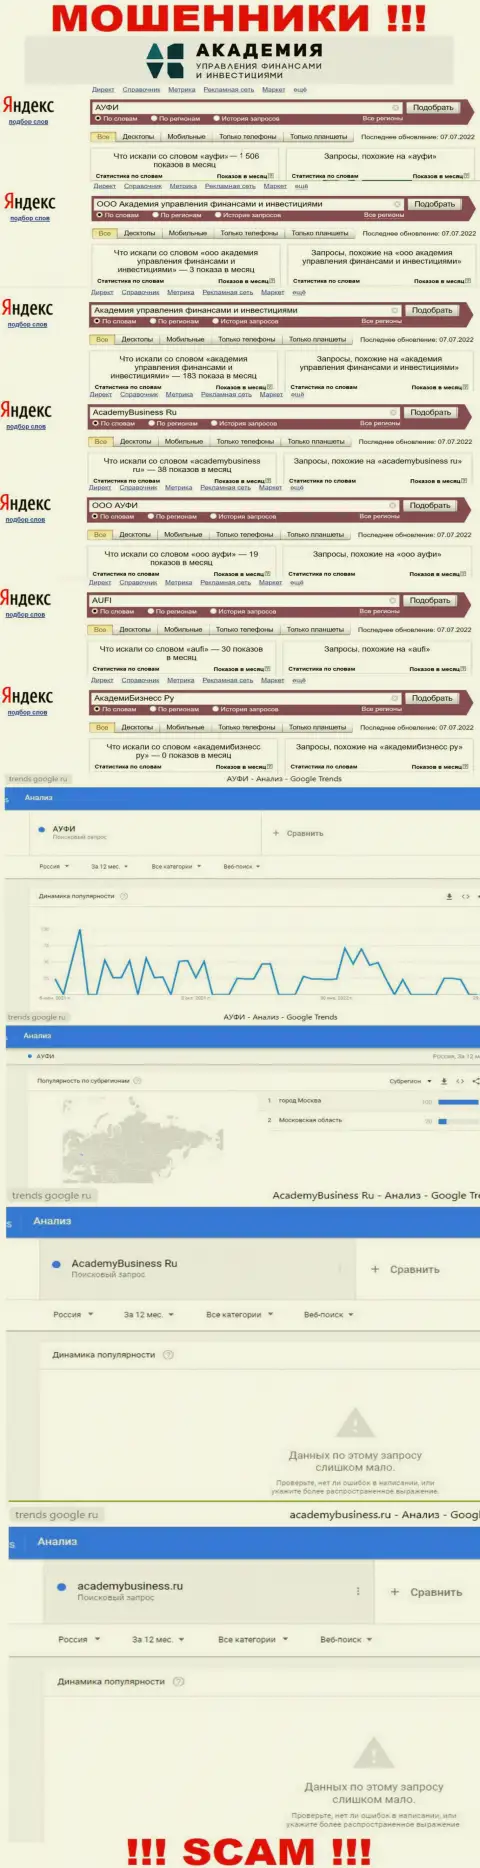 Статистические показатели интернет запросов по бренду жуликов ООО АУФИ